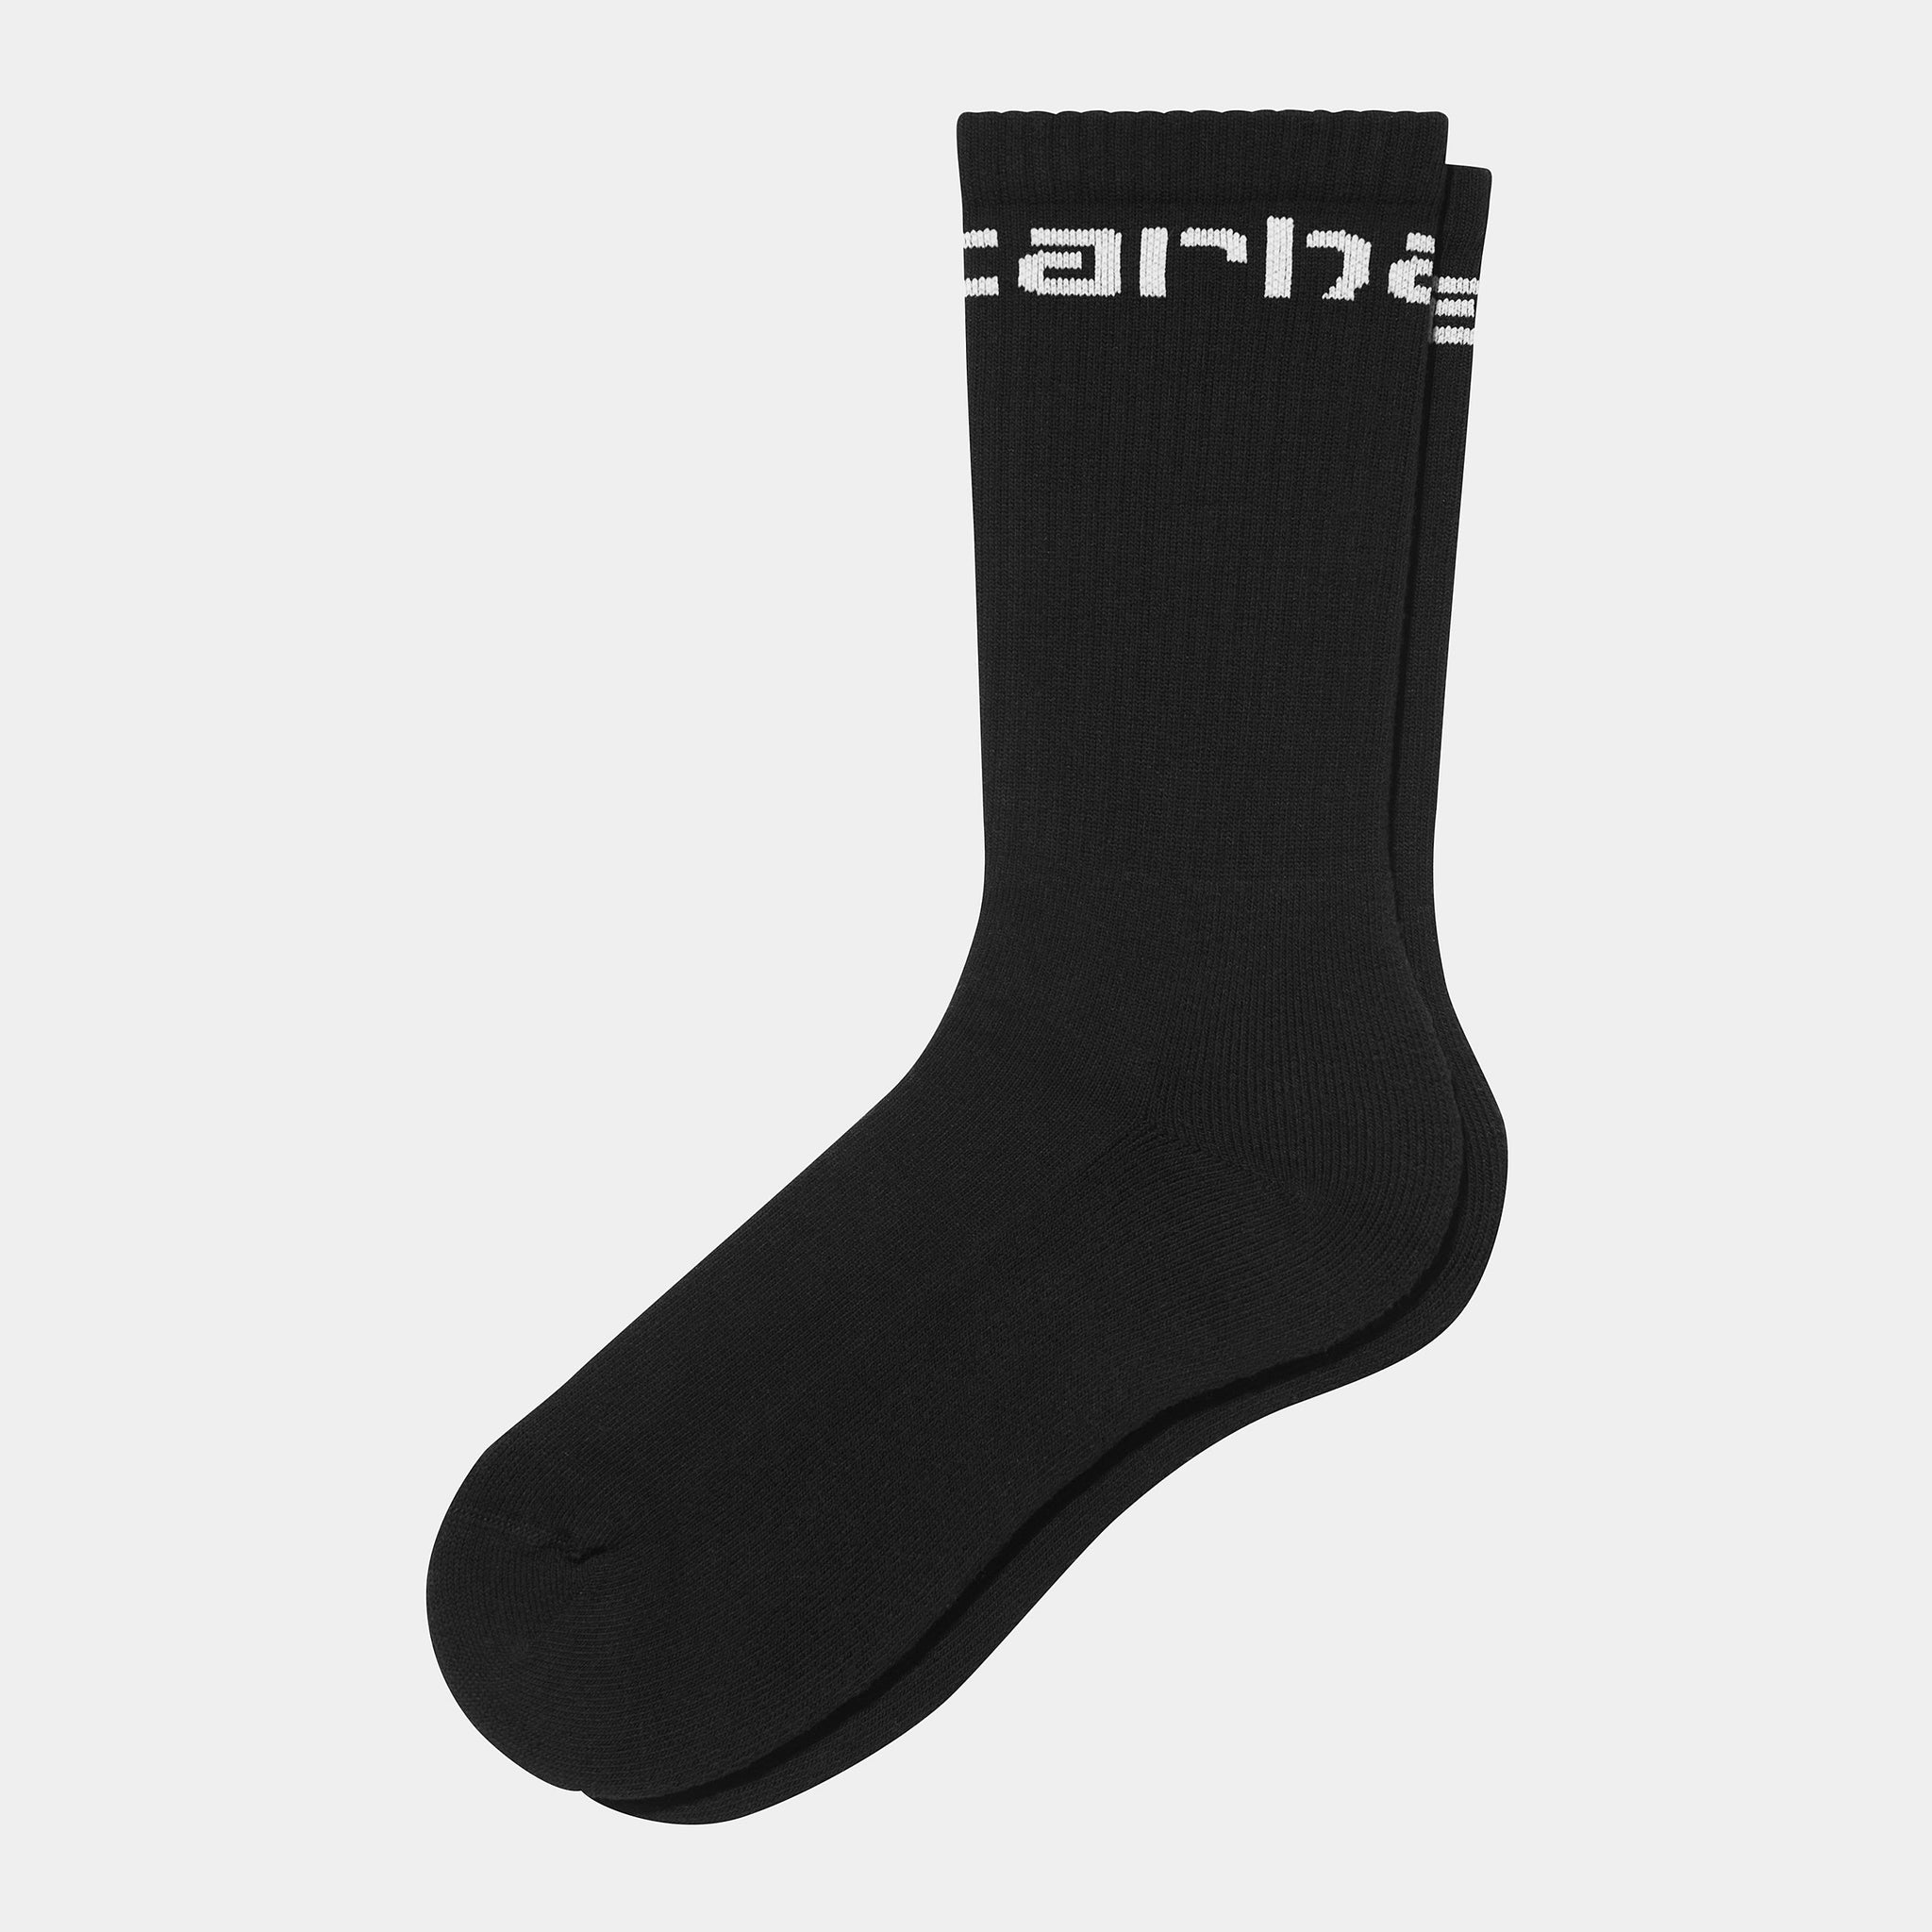 Carhartt Socks (Black / White)